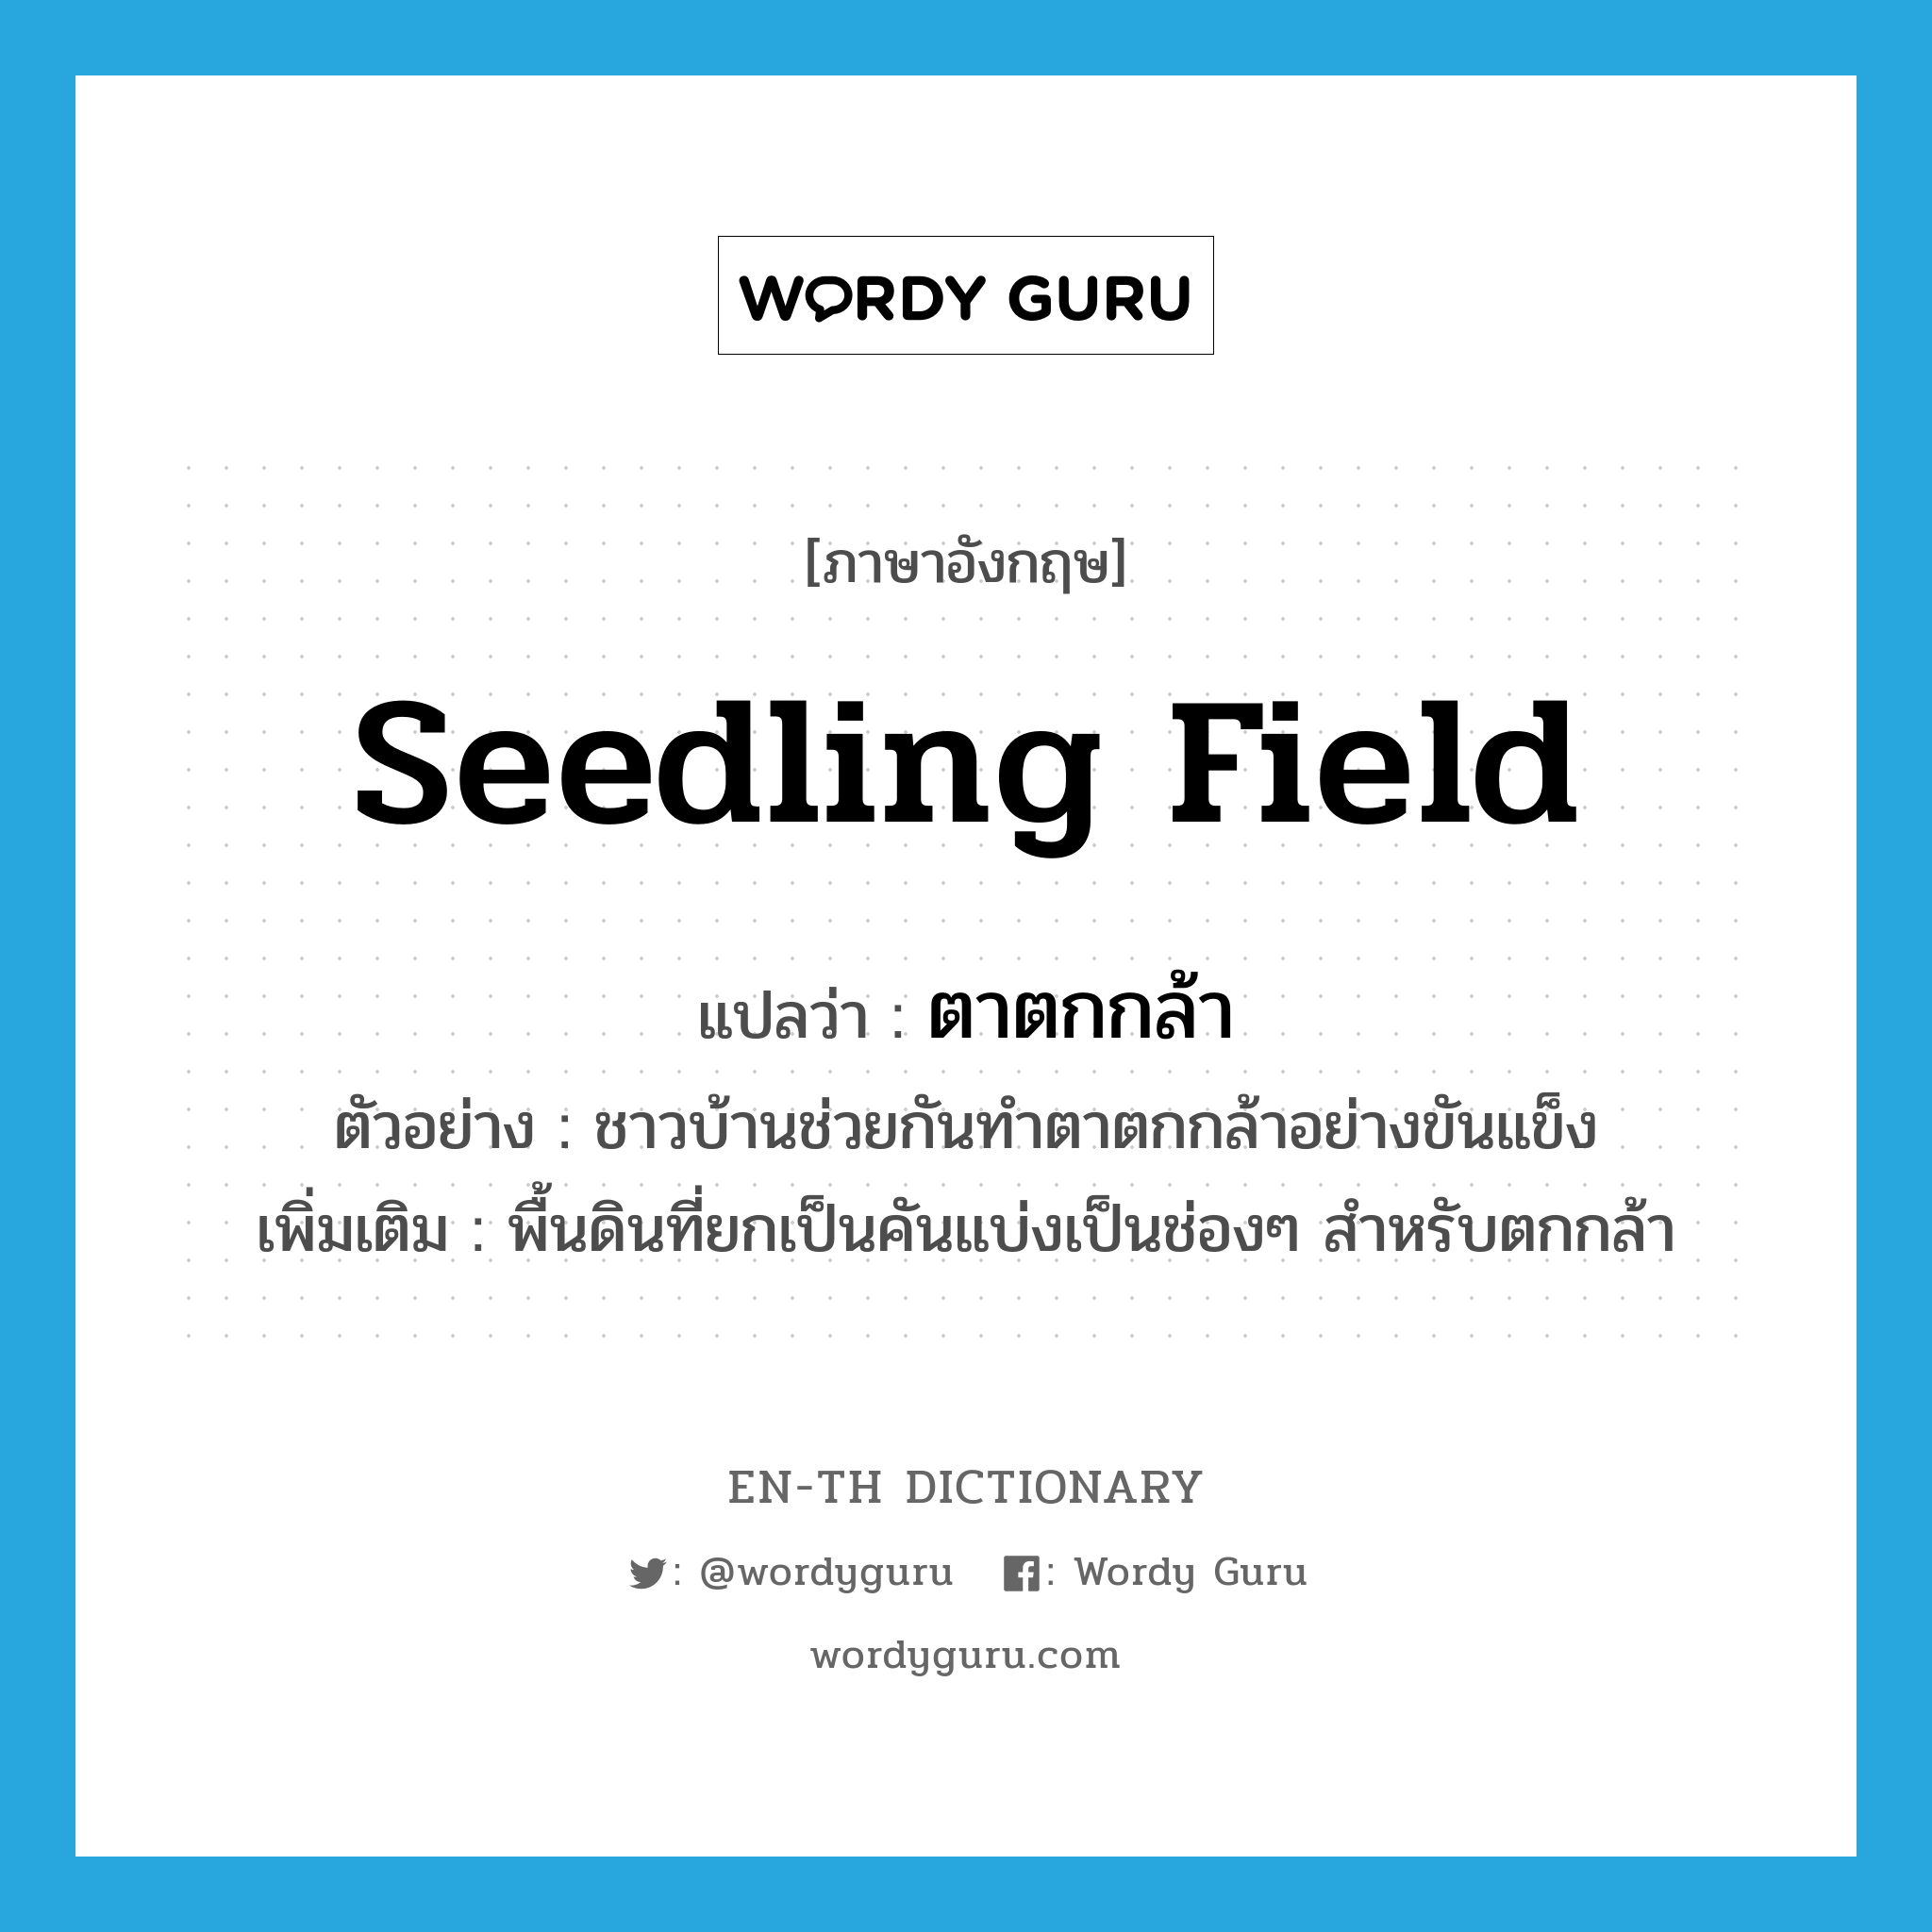 seedling field แปลว่า?, คำศัพท์ภาษาอังกฤษ seedling field แปลว่า ตาตกกล้า ประเภท N ตัวอย่าง ชาวบ้านช่วยกันทำตาตกกล้าอย่างขันแข็ง เพิ่มเติม พื้นดินที่ยกเป็นคันแบ่งเป็นช่องๆ สำหรับตกกล้า หมวด N